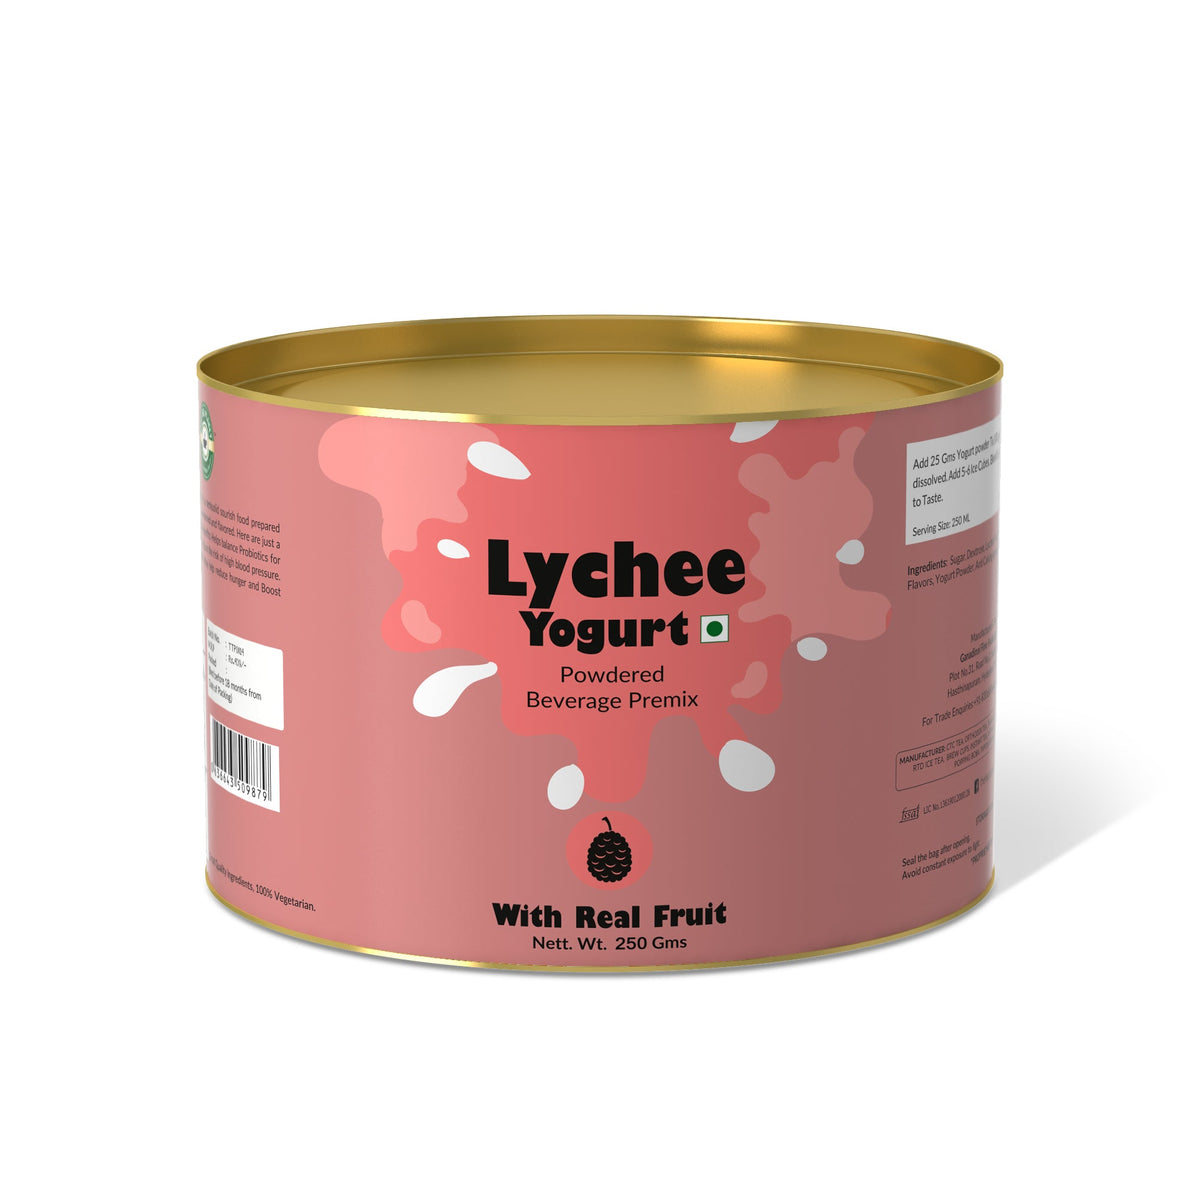 Lychee Yogurt Mix